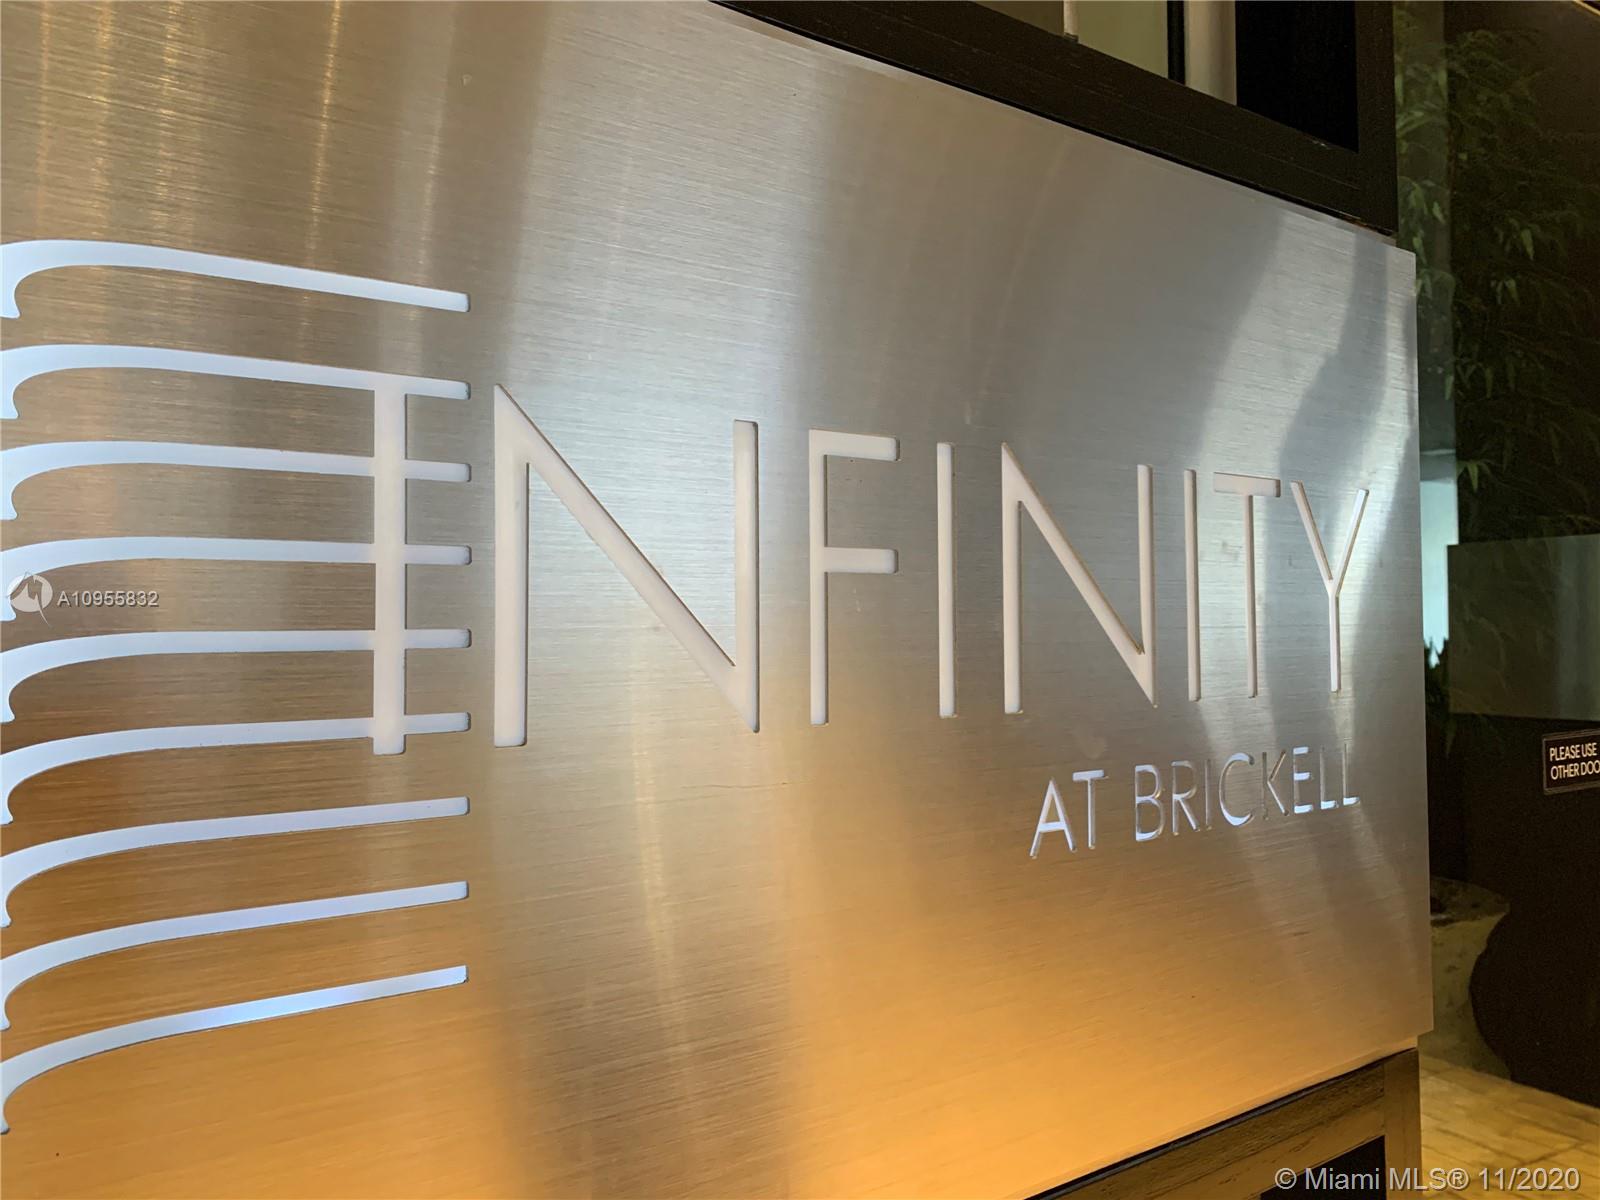 Infinity at Brickell image #1